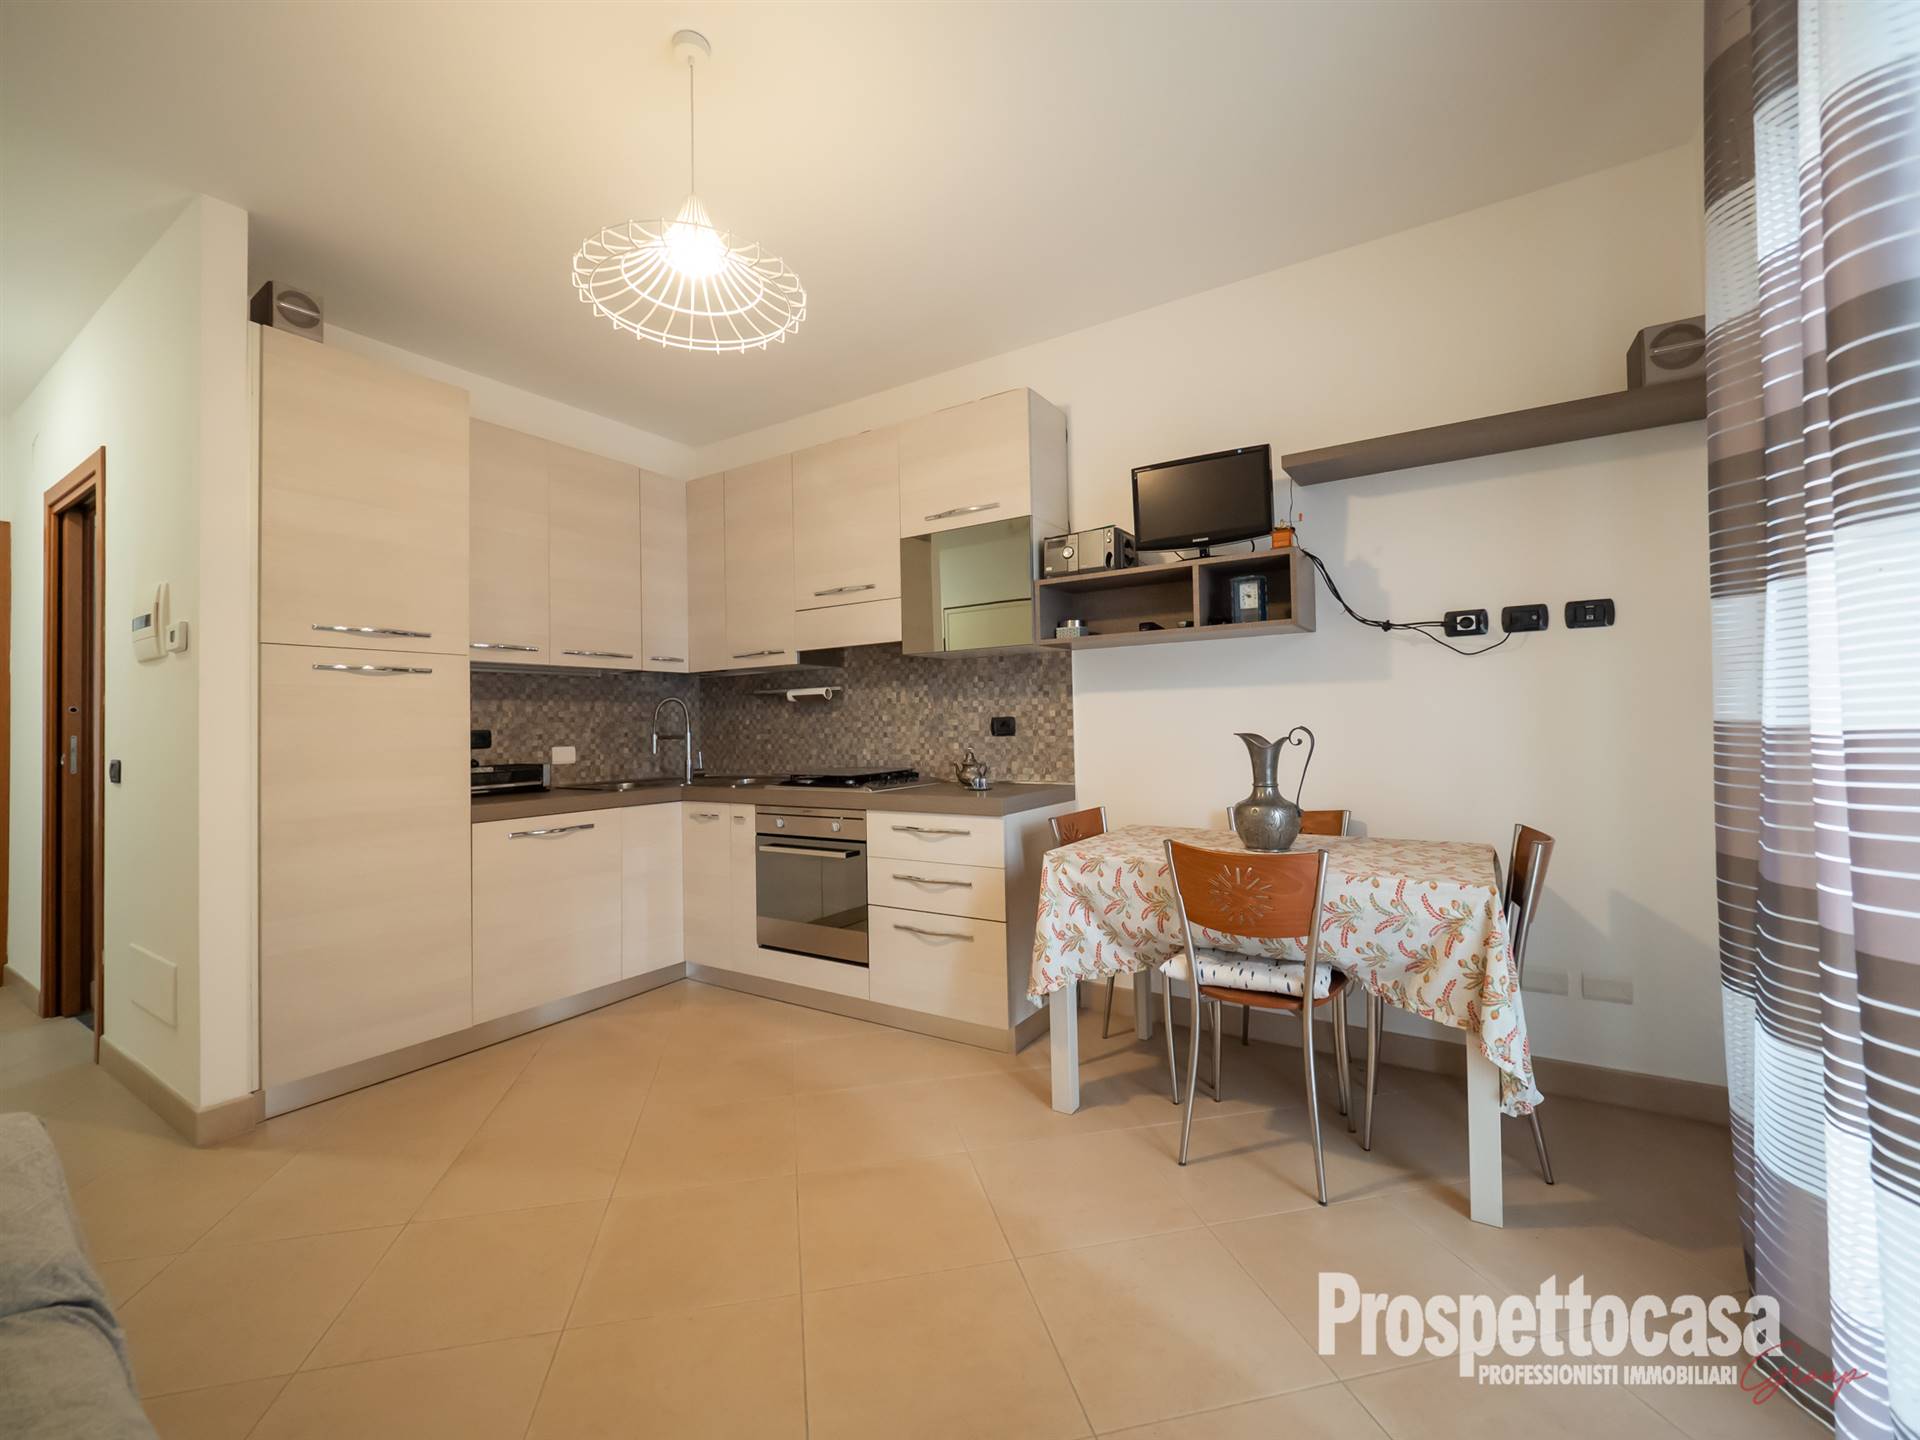 Appartamento in vendita a Trezzano sul Naviglio, 2 locali, prezzo € 200.000 | CambioCasa.it